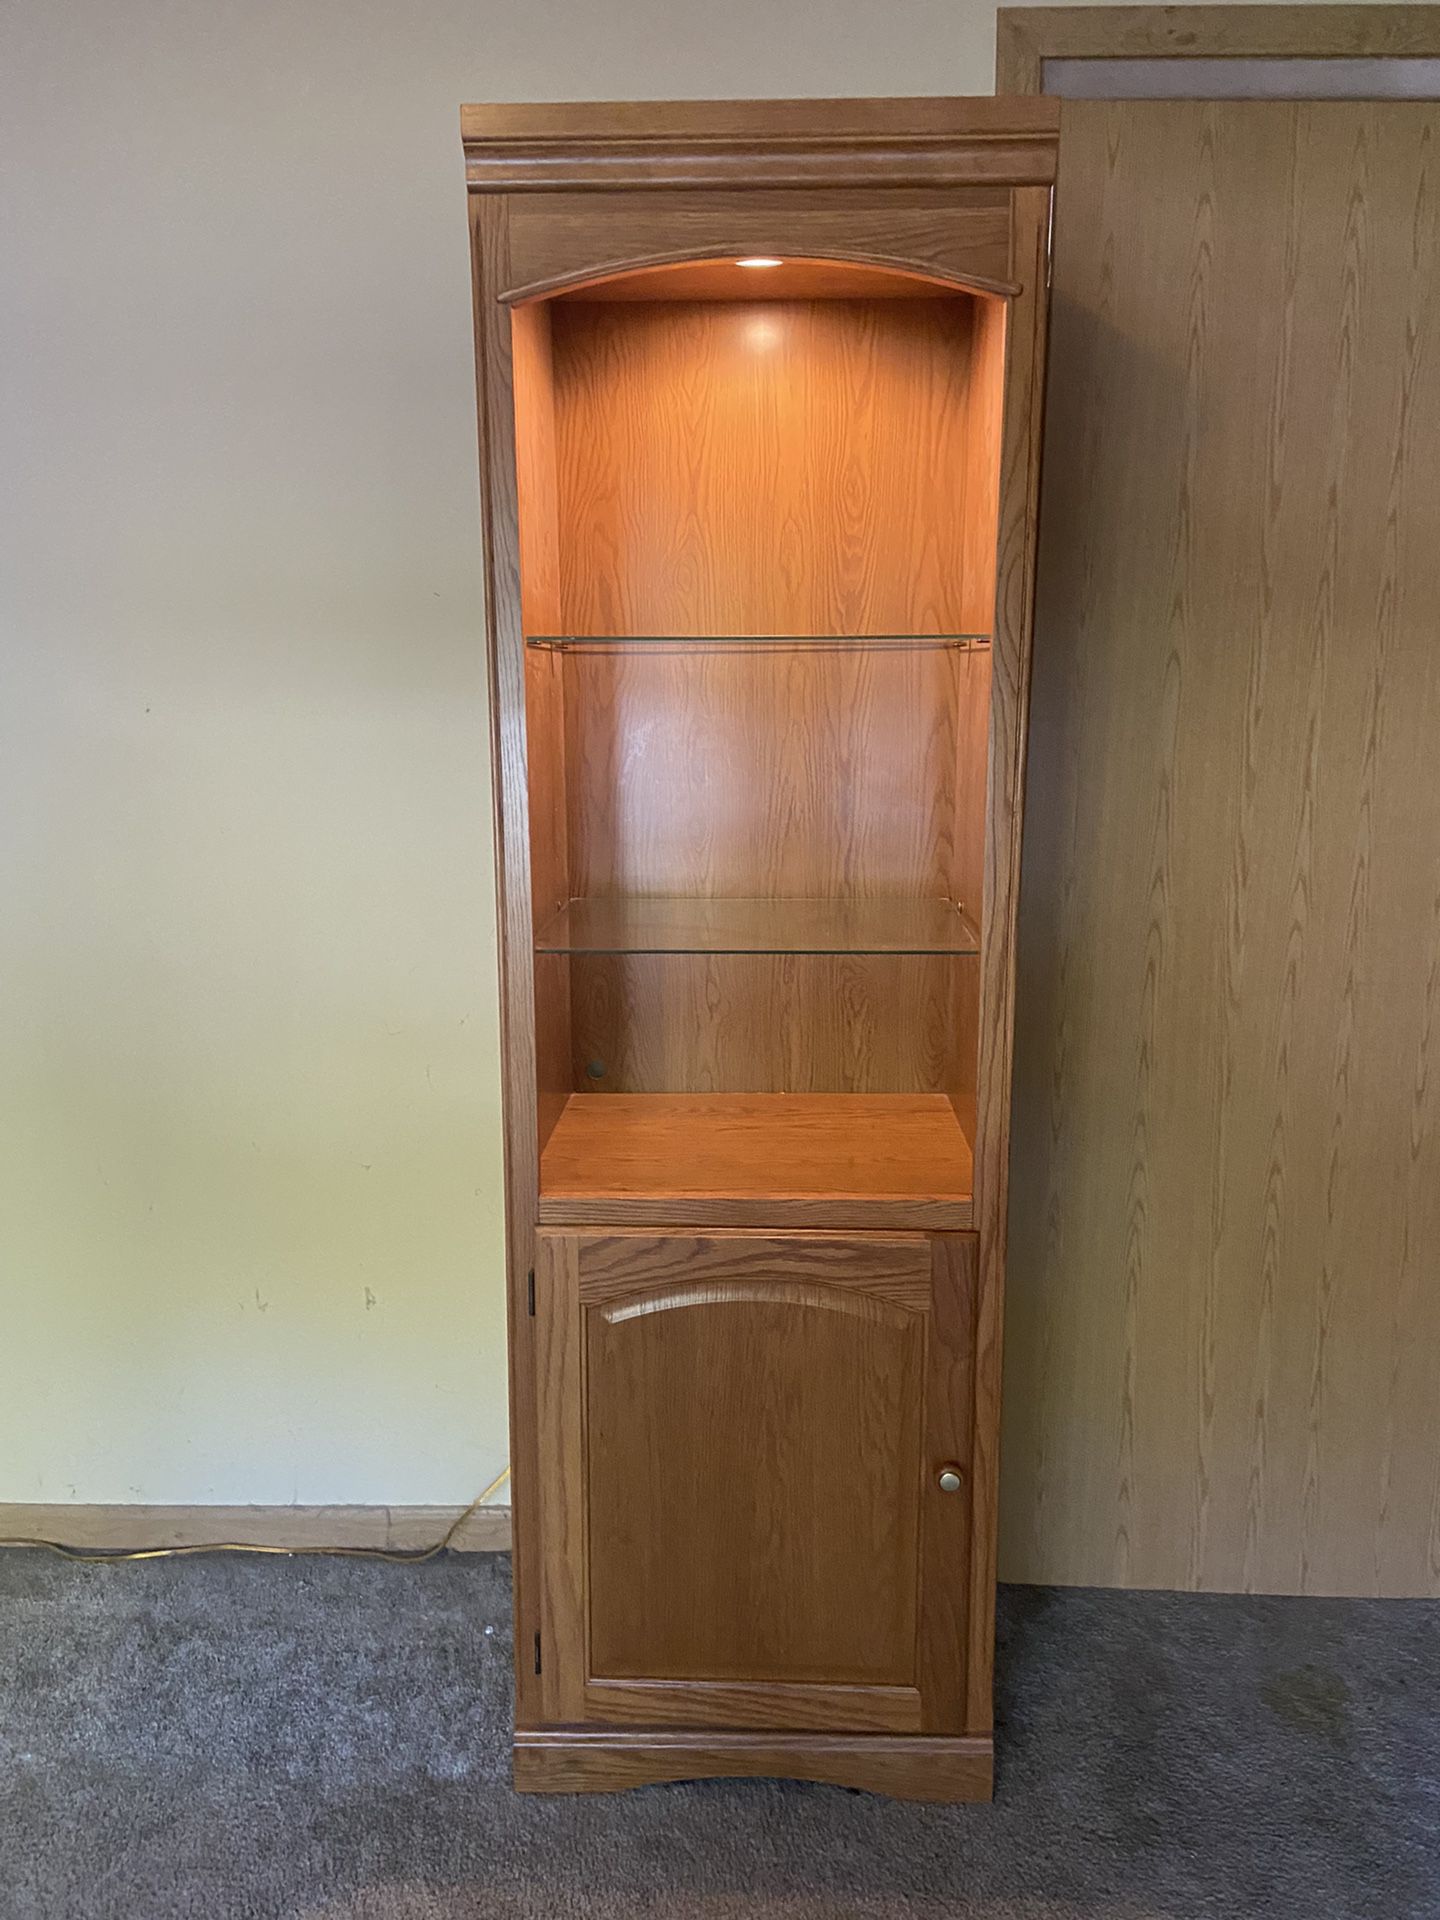 6ft Tall Shelved/Lighting Display Case Dresser 